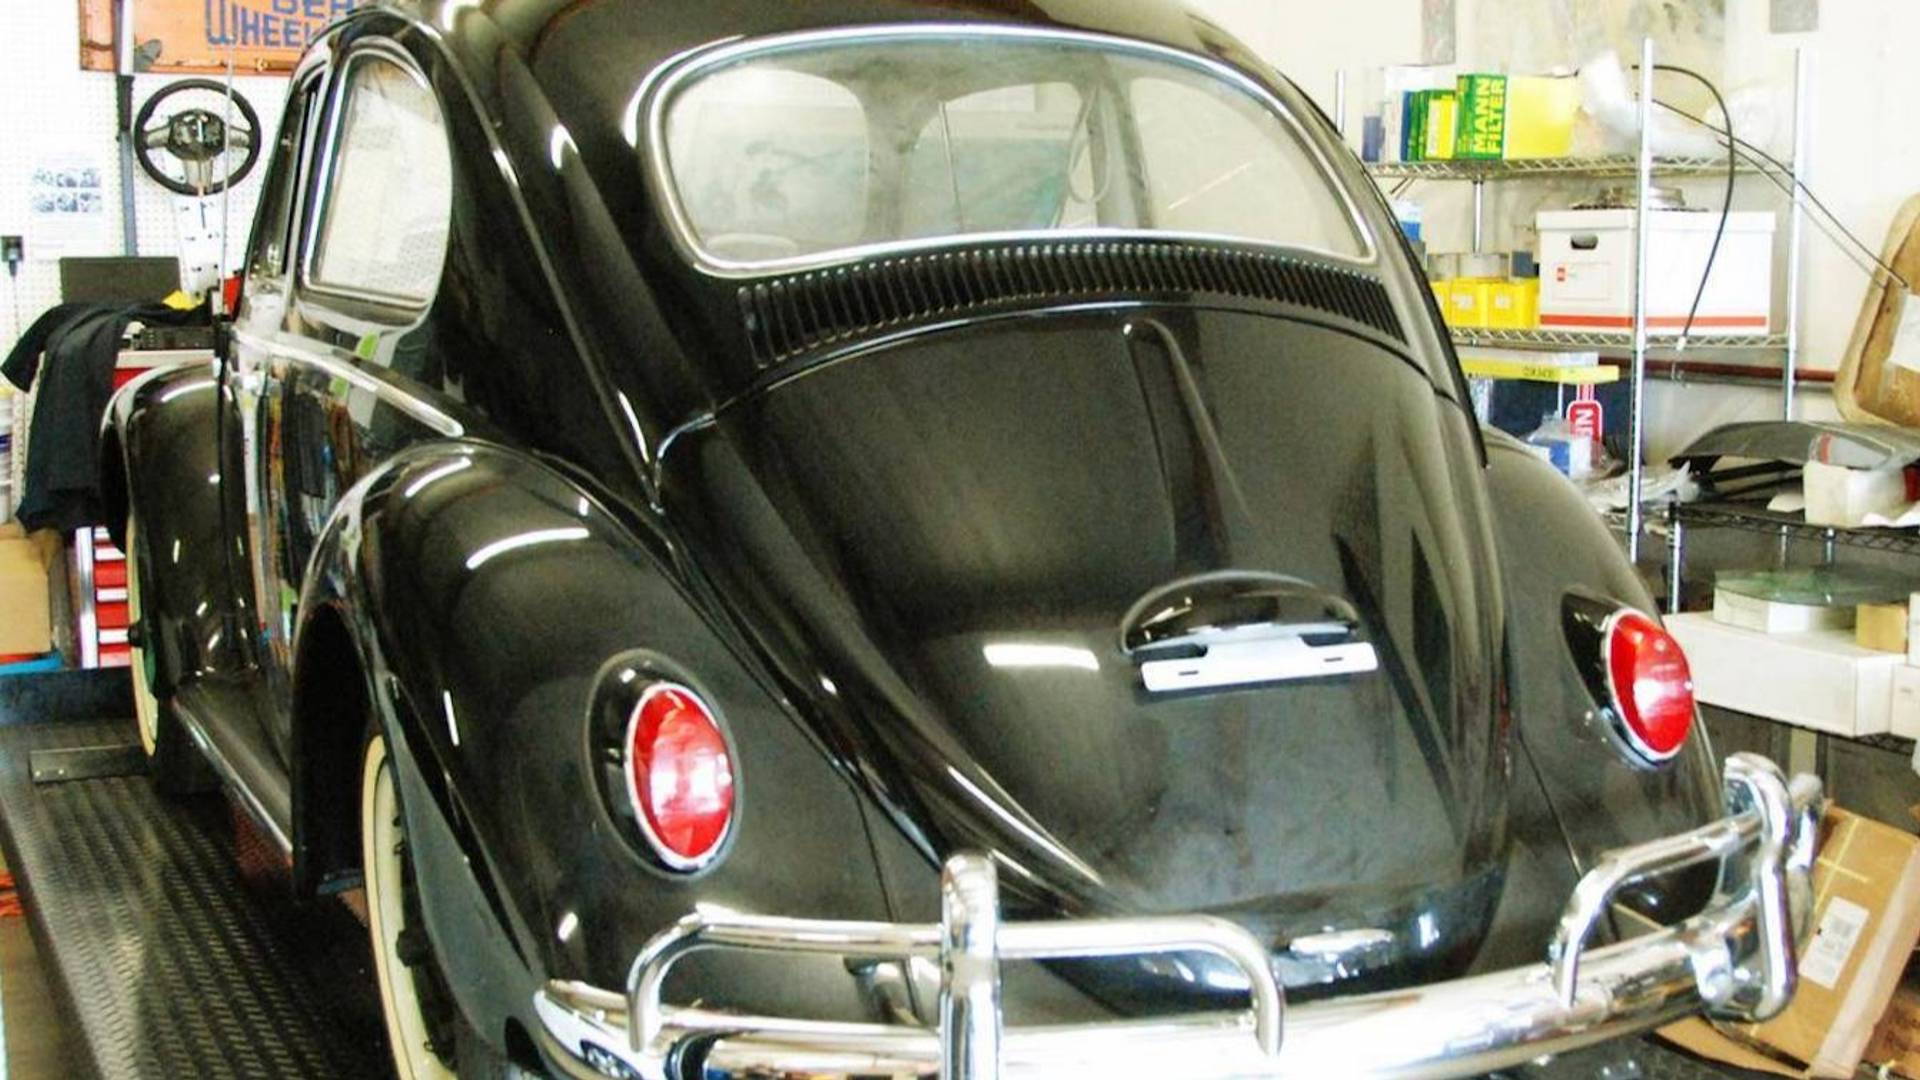 1964 Volkswagen Beetle being sold for $1,000,000